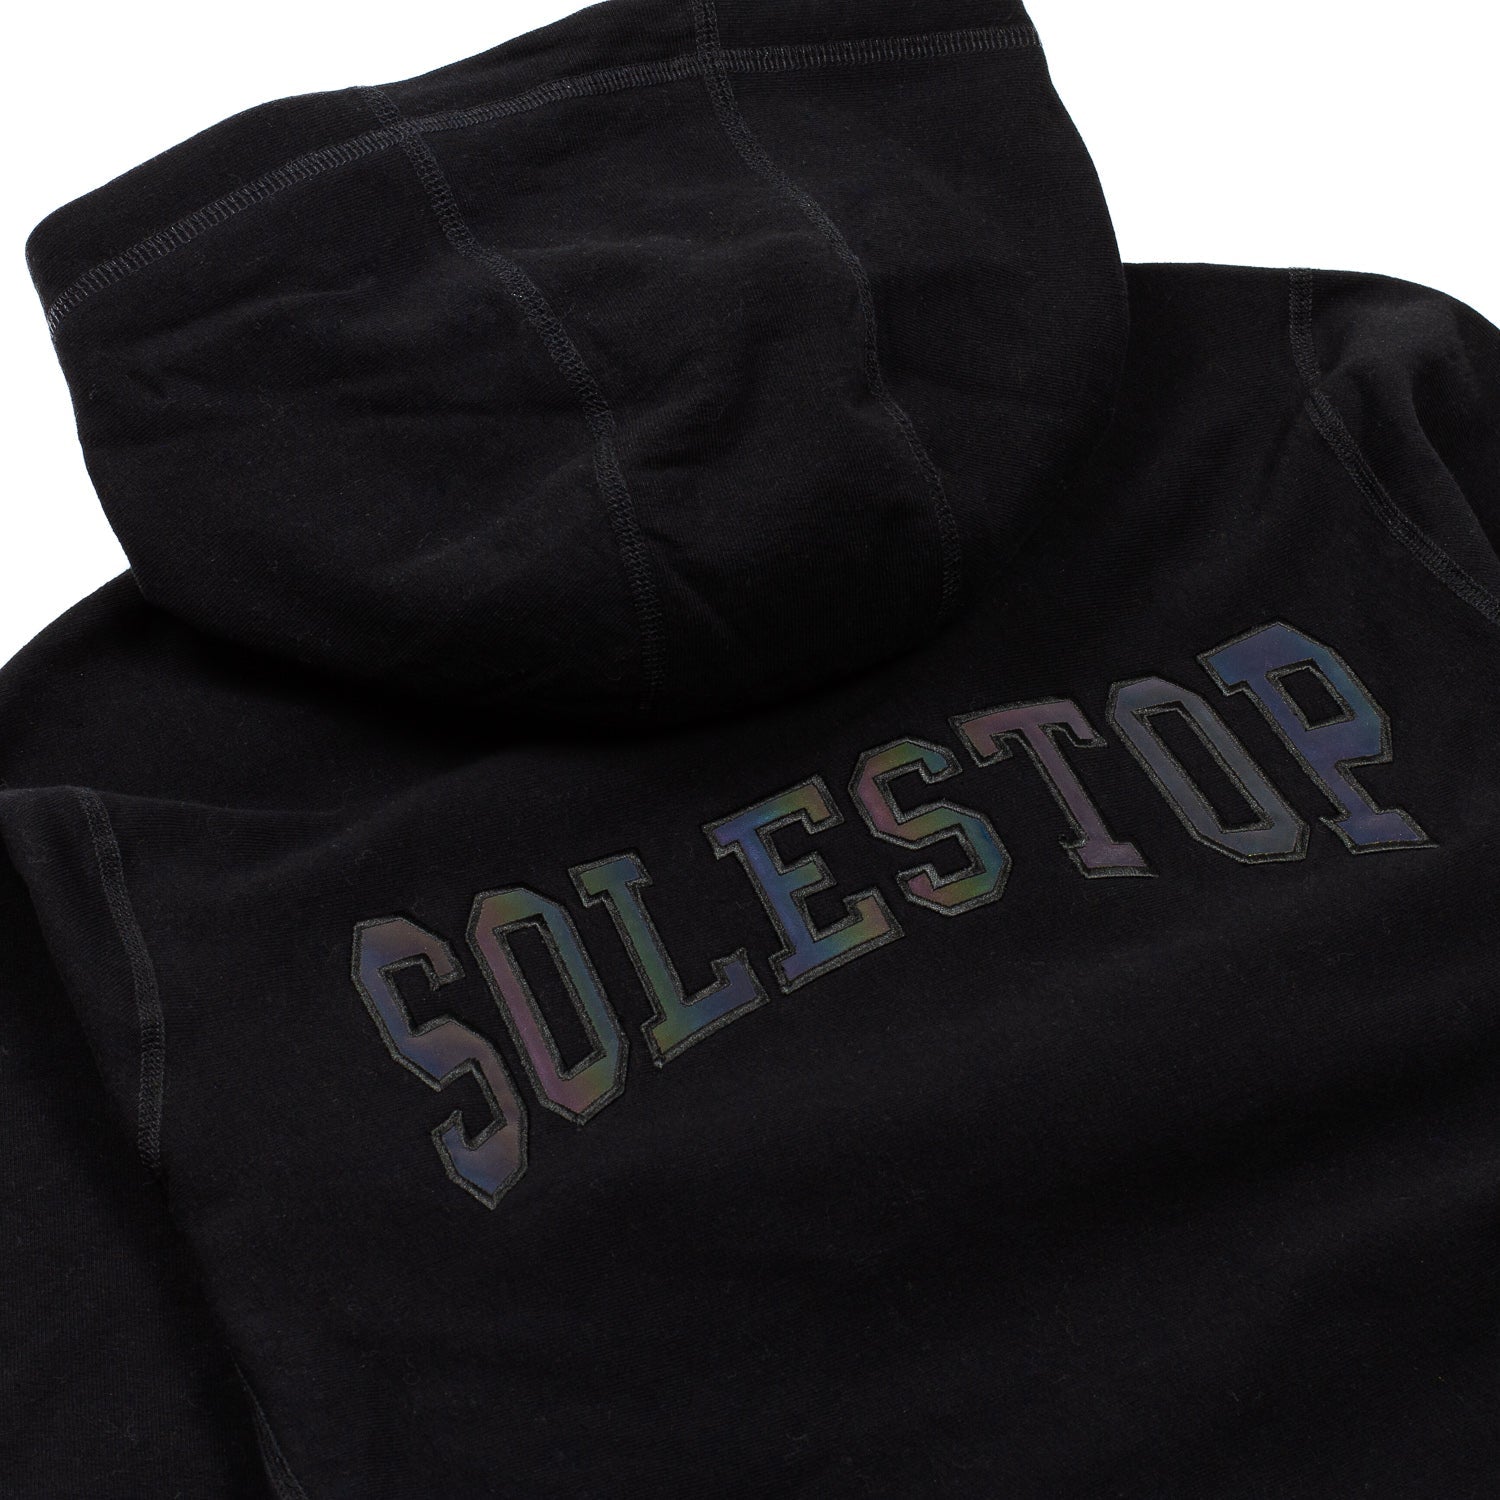 Solestop Men Zip Hooded Sweatshirt Black Iridescent Reflective - SWEATERS - Canada